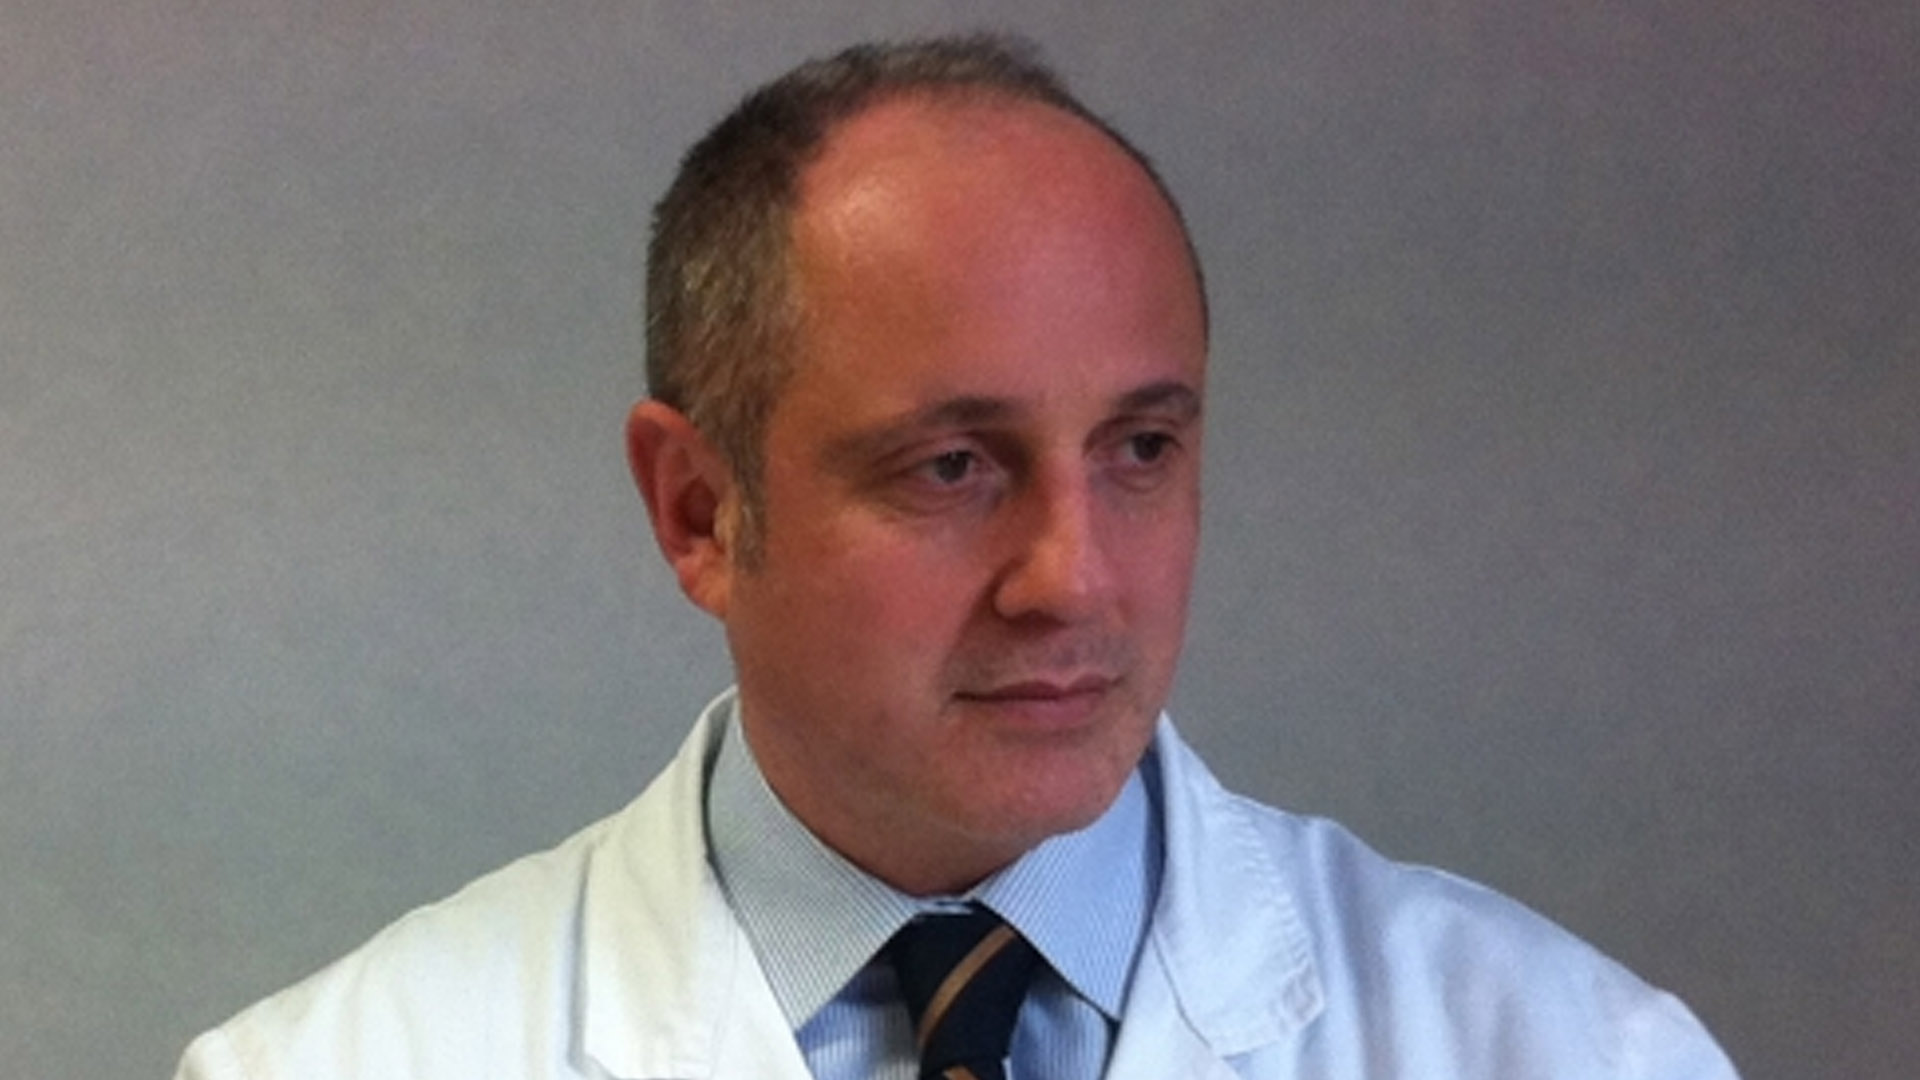 Michele Rendace, Specialista in Chirurgia Vascolare, Flebologia chirurgica, Angiologia.